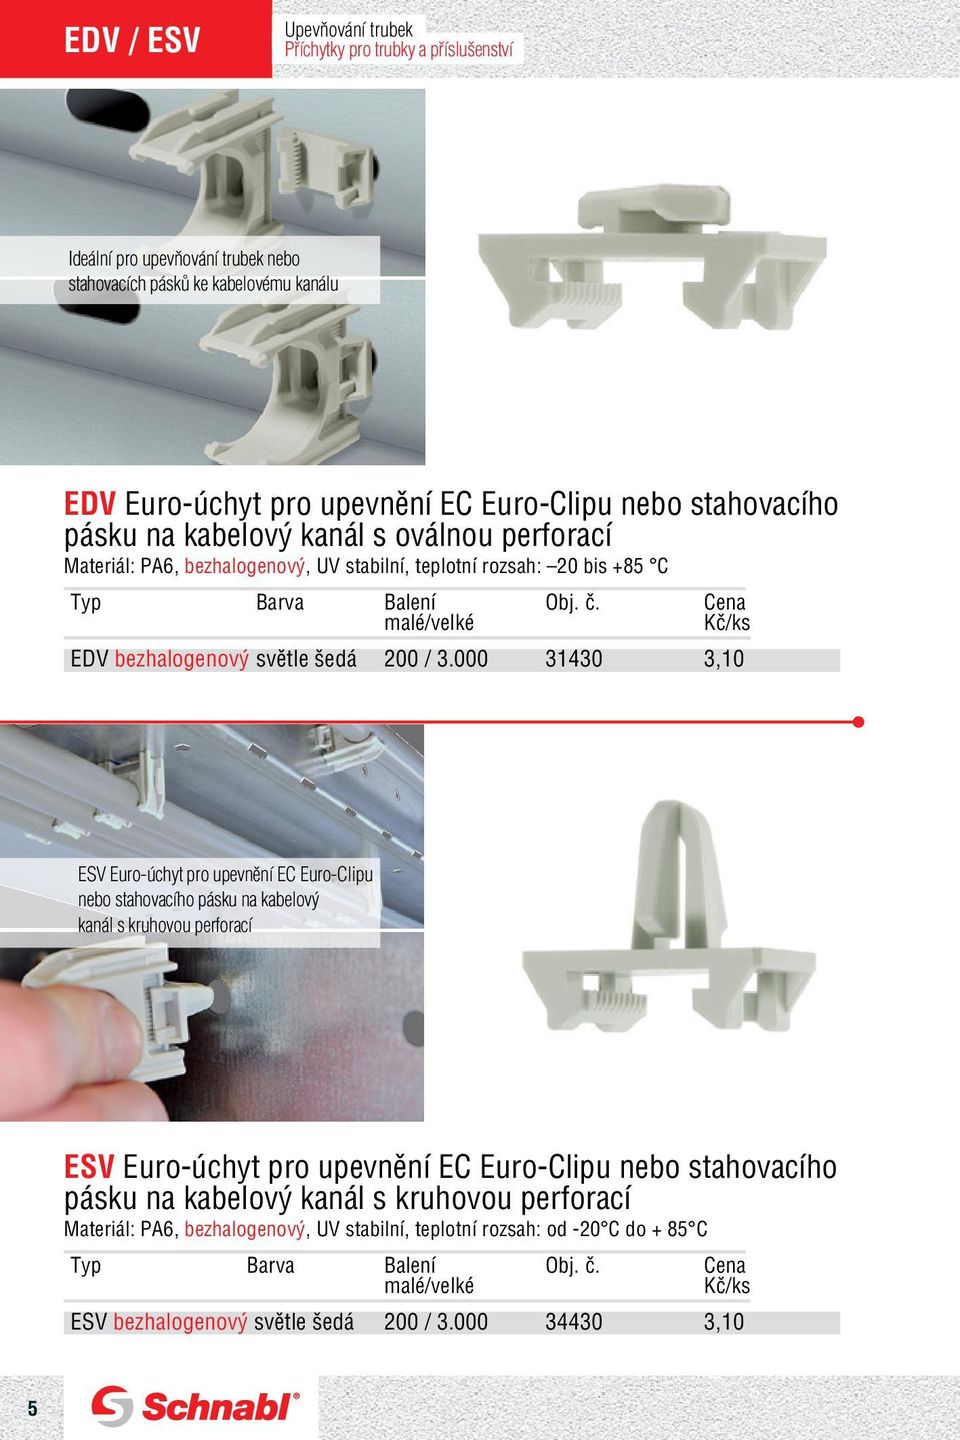 000 31430 3,10 ESV Euro-úchyt pro upevnění EC Euro-Clipu nebo stahovacího pásku na kabelový kanál s kruhovou perforací ESV Euro-úchyt pro upevnění EC Euro-Clipu nebo stahovacího